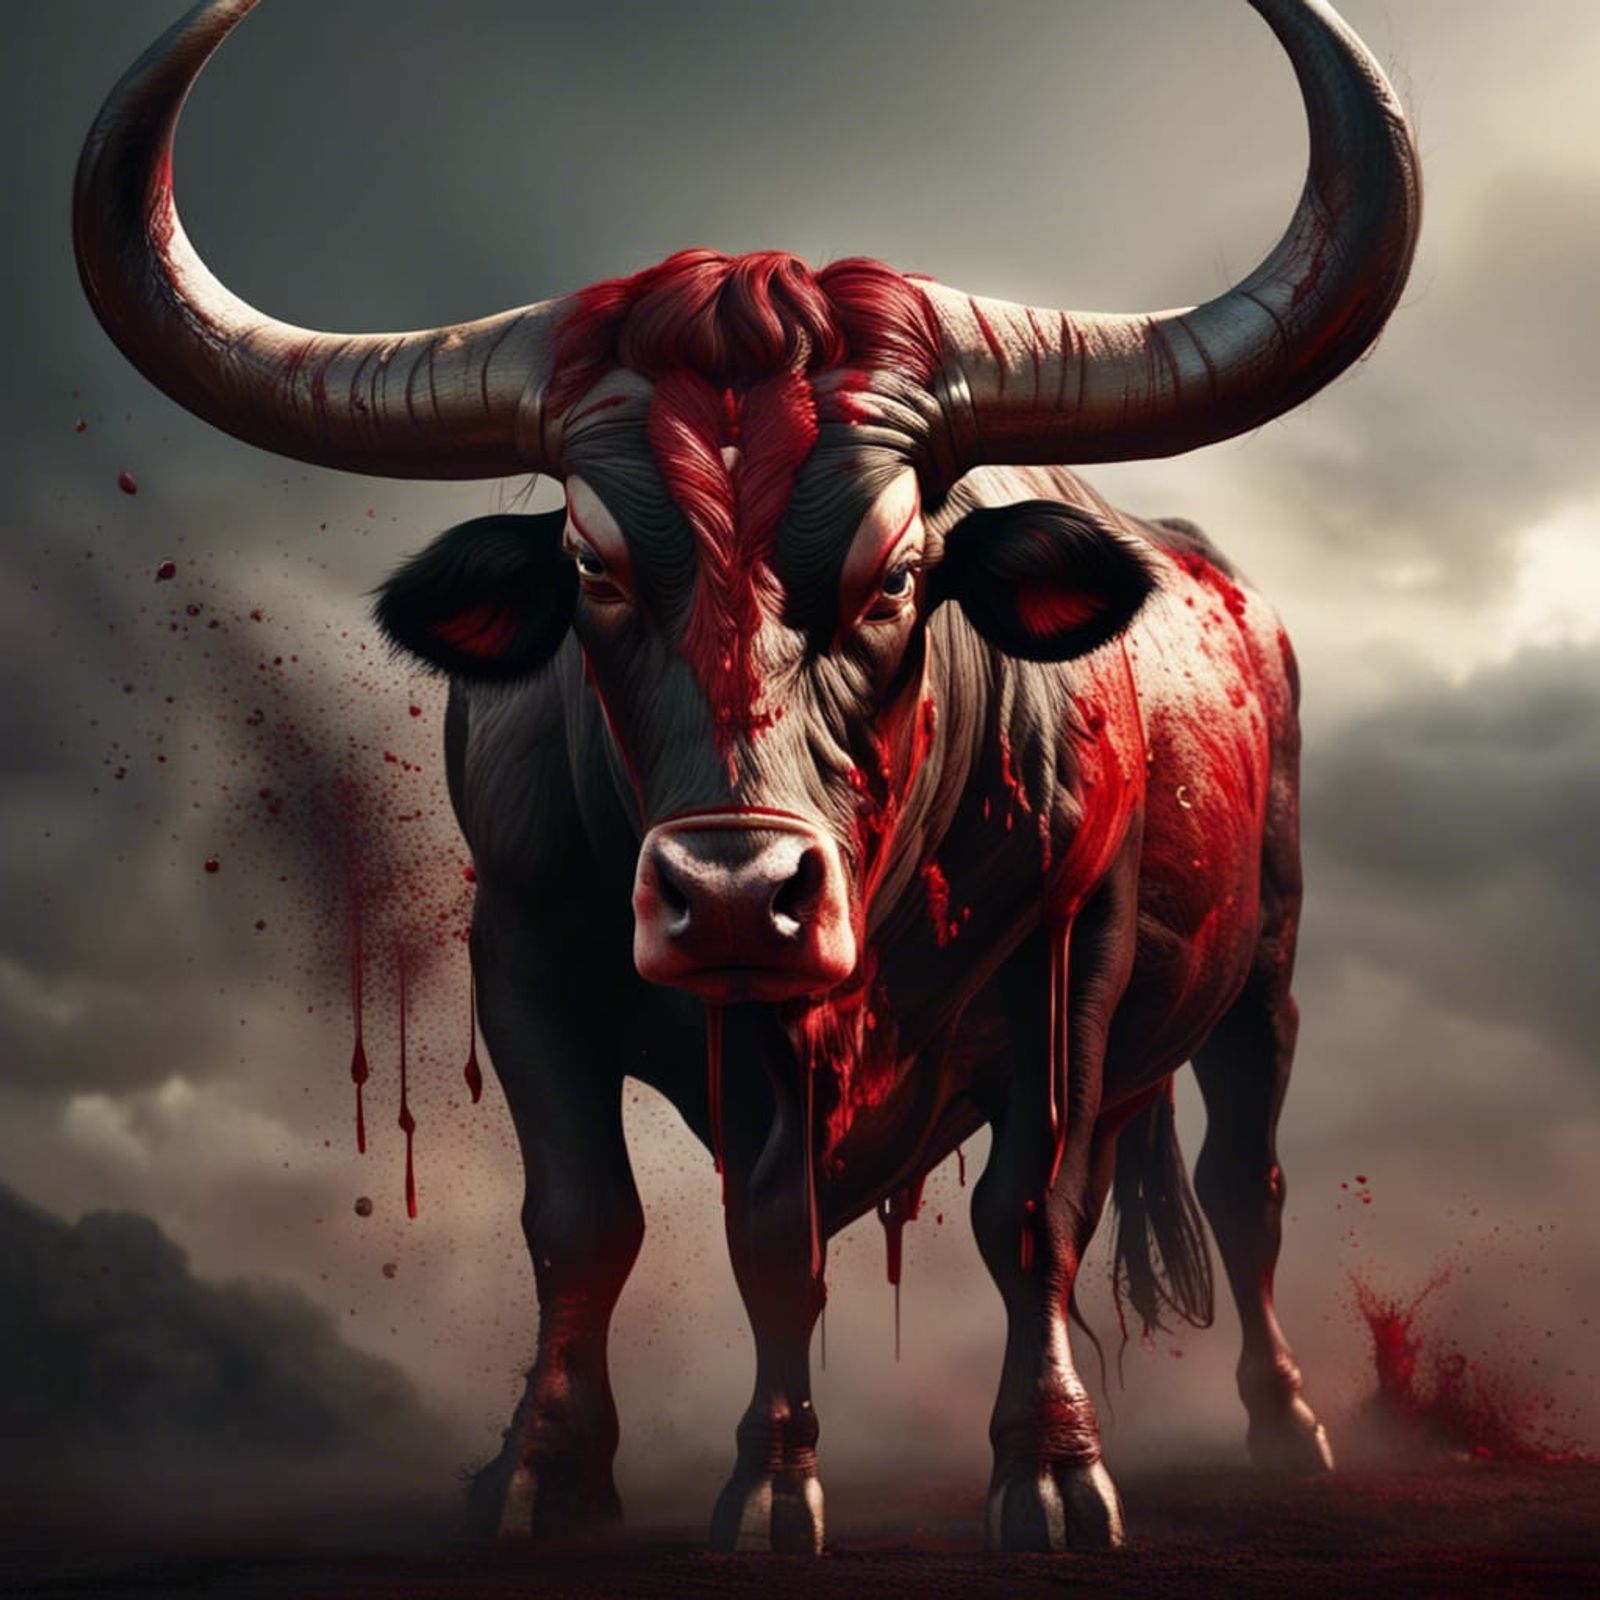 dangerous bull wallpaper